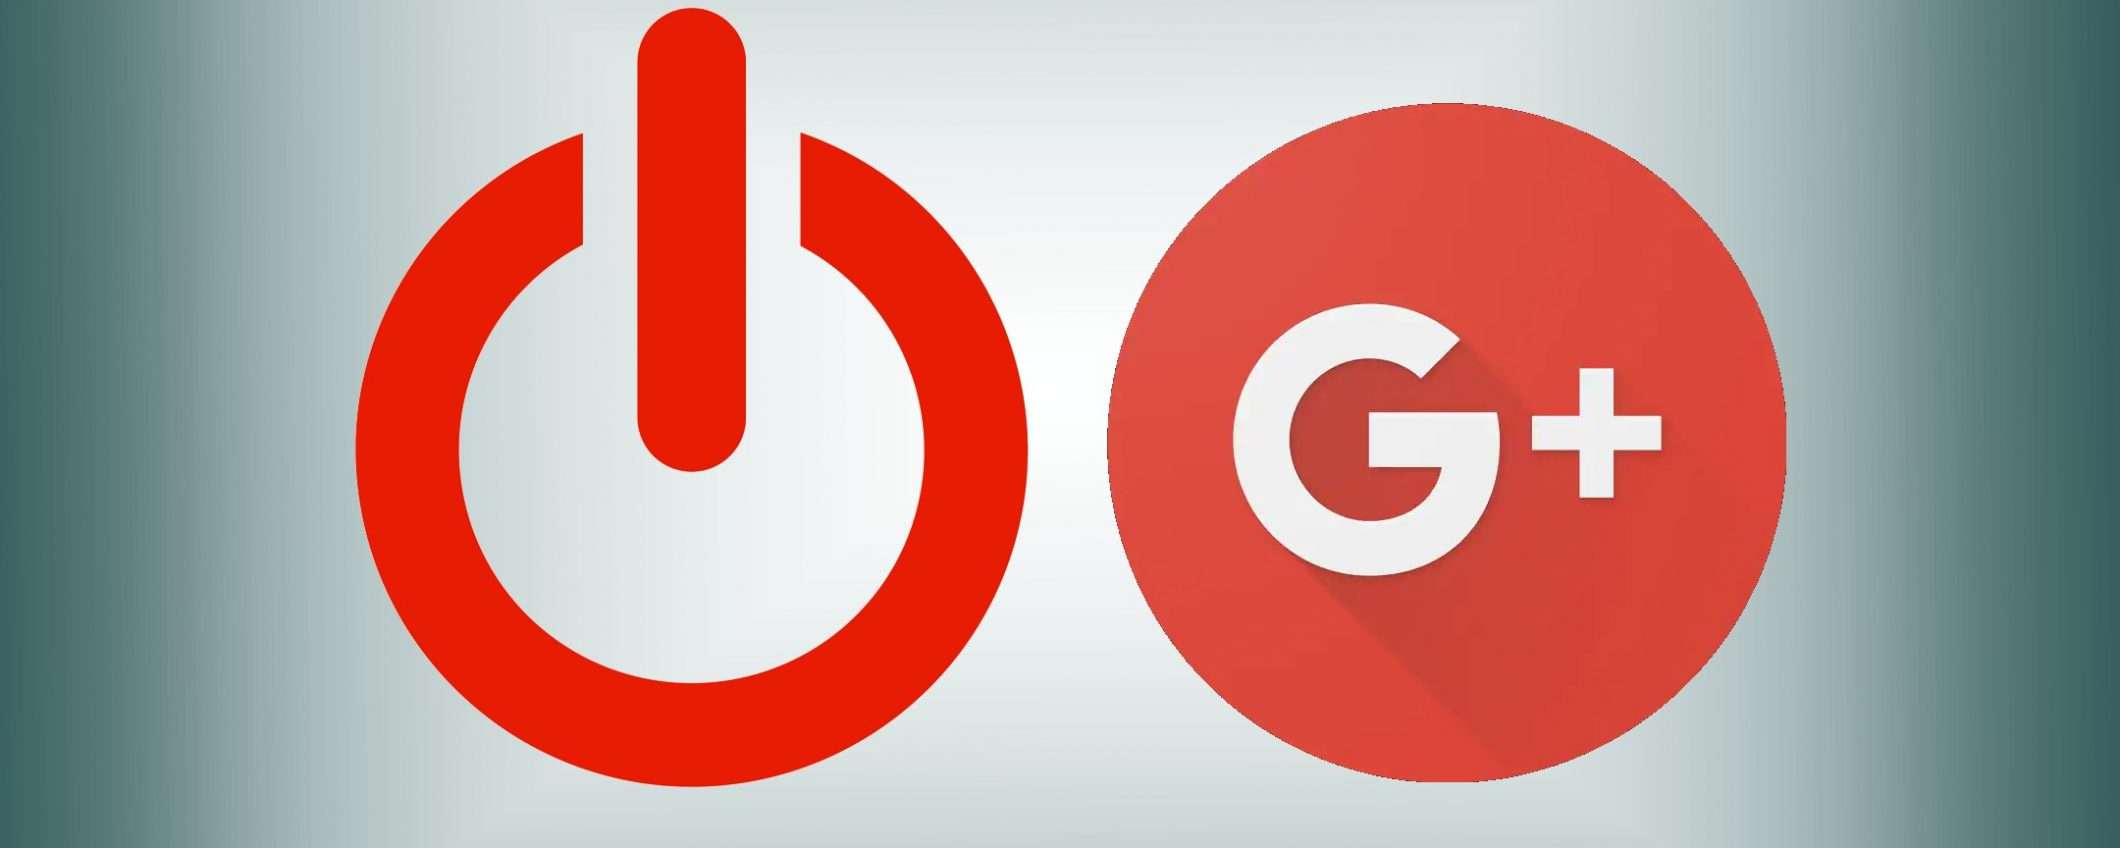 Google+ avvisa: salvate ora i vostri contenuti